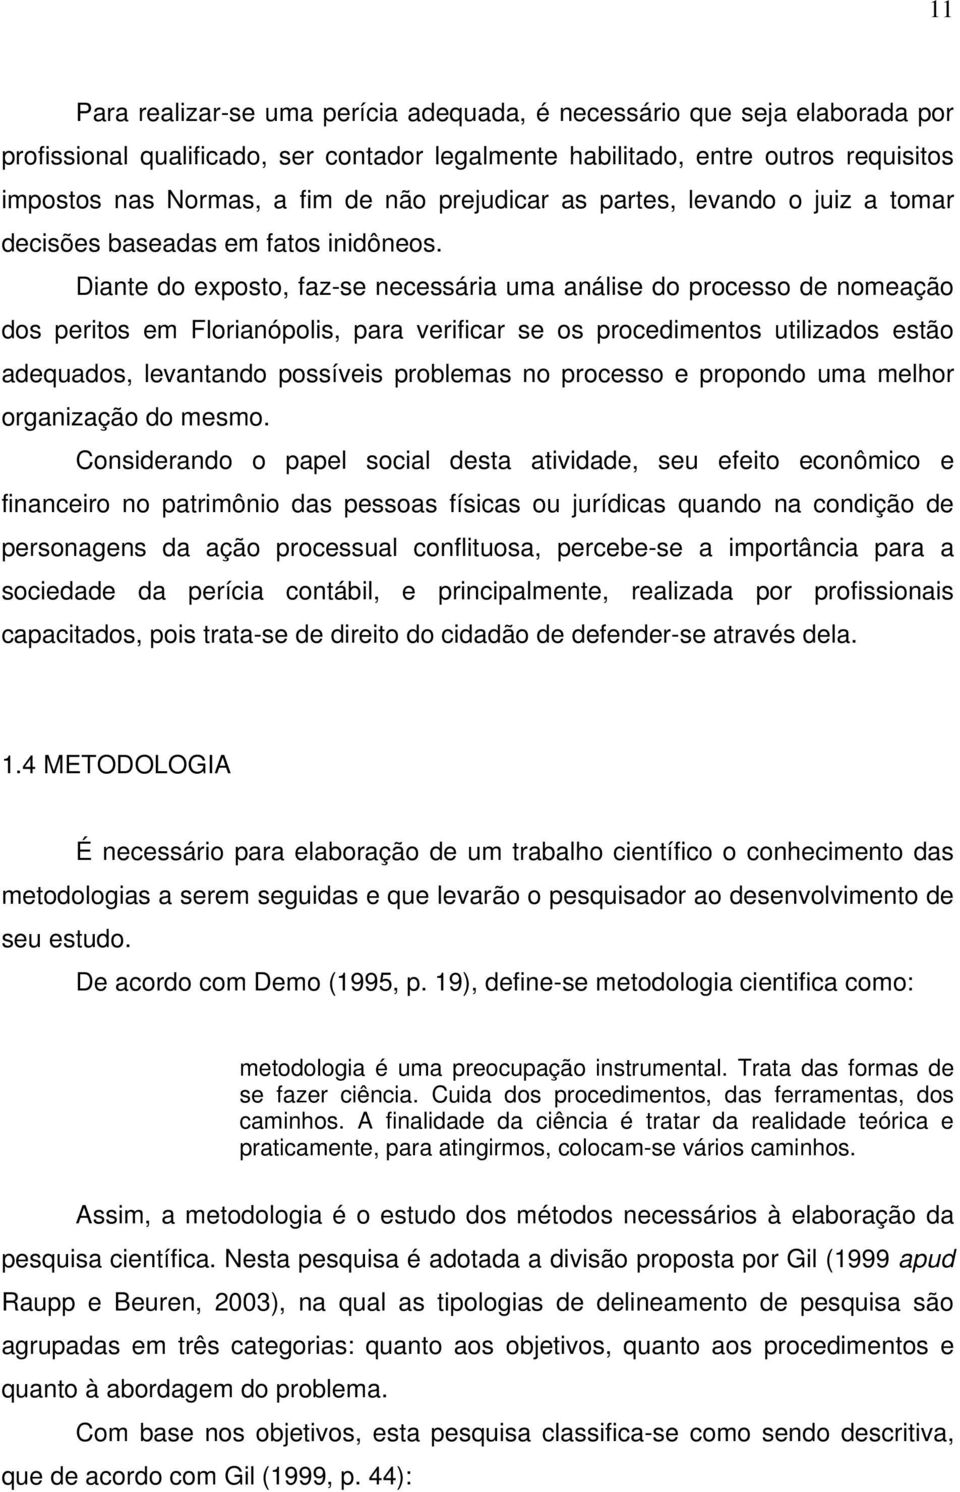 Diante do exposto, faz-se necessária uma análise do processo de nomeação dos peritos em Florianópolis, para verificar se os procedimentos utilizados estão adequados, levantando possíveis problemas no